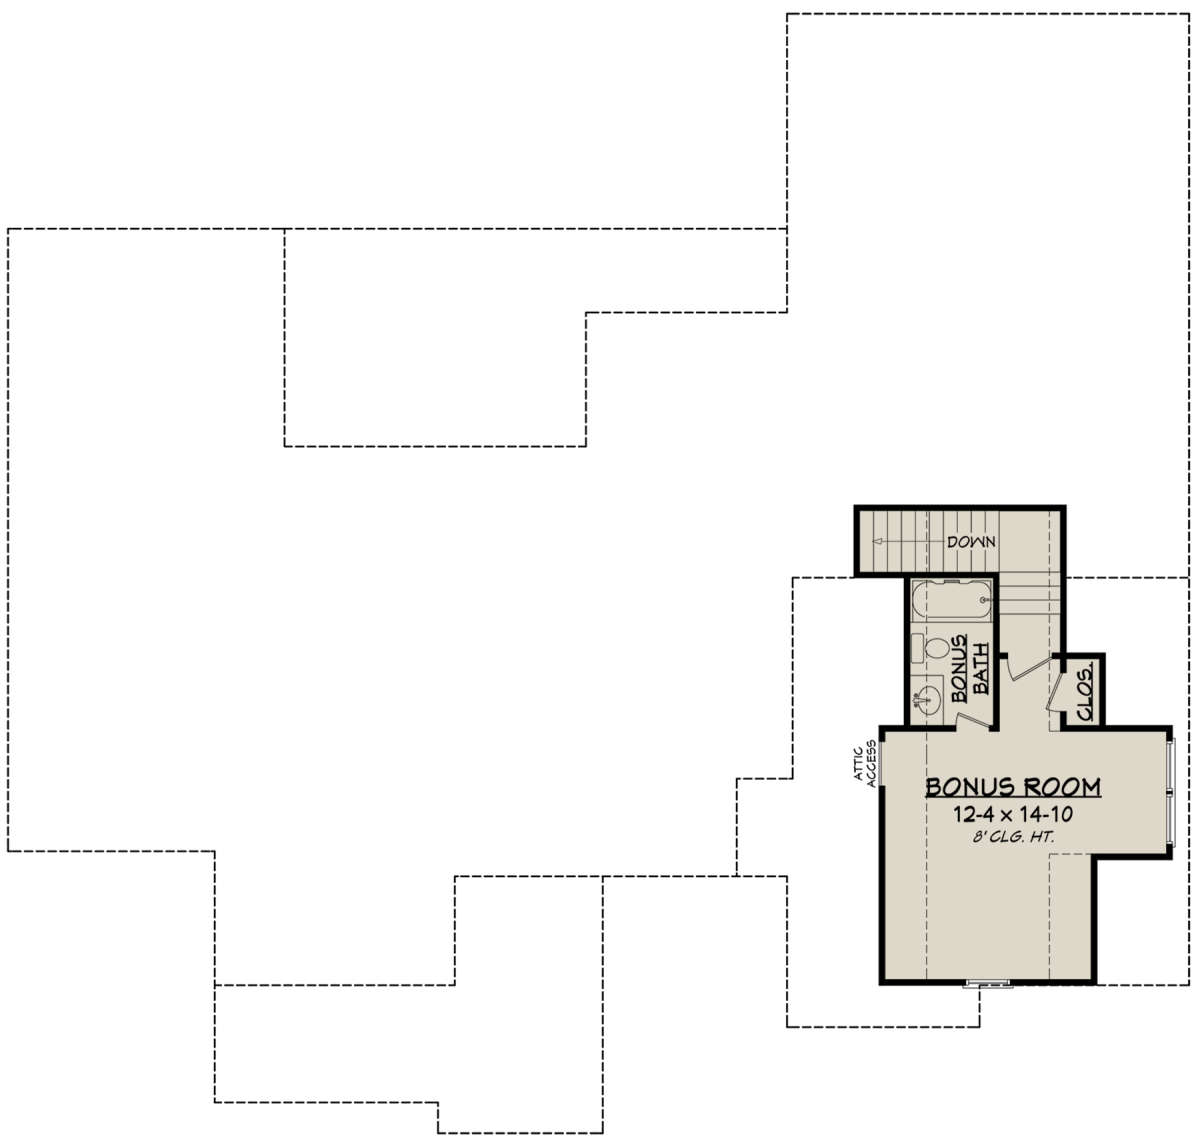 Bonus Room for House Plan #041-00187